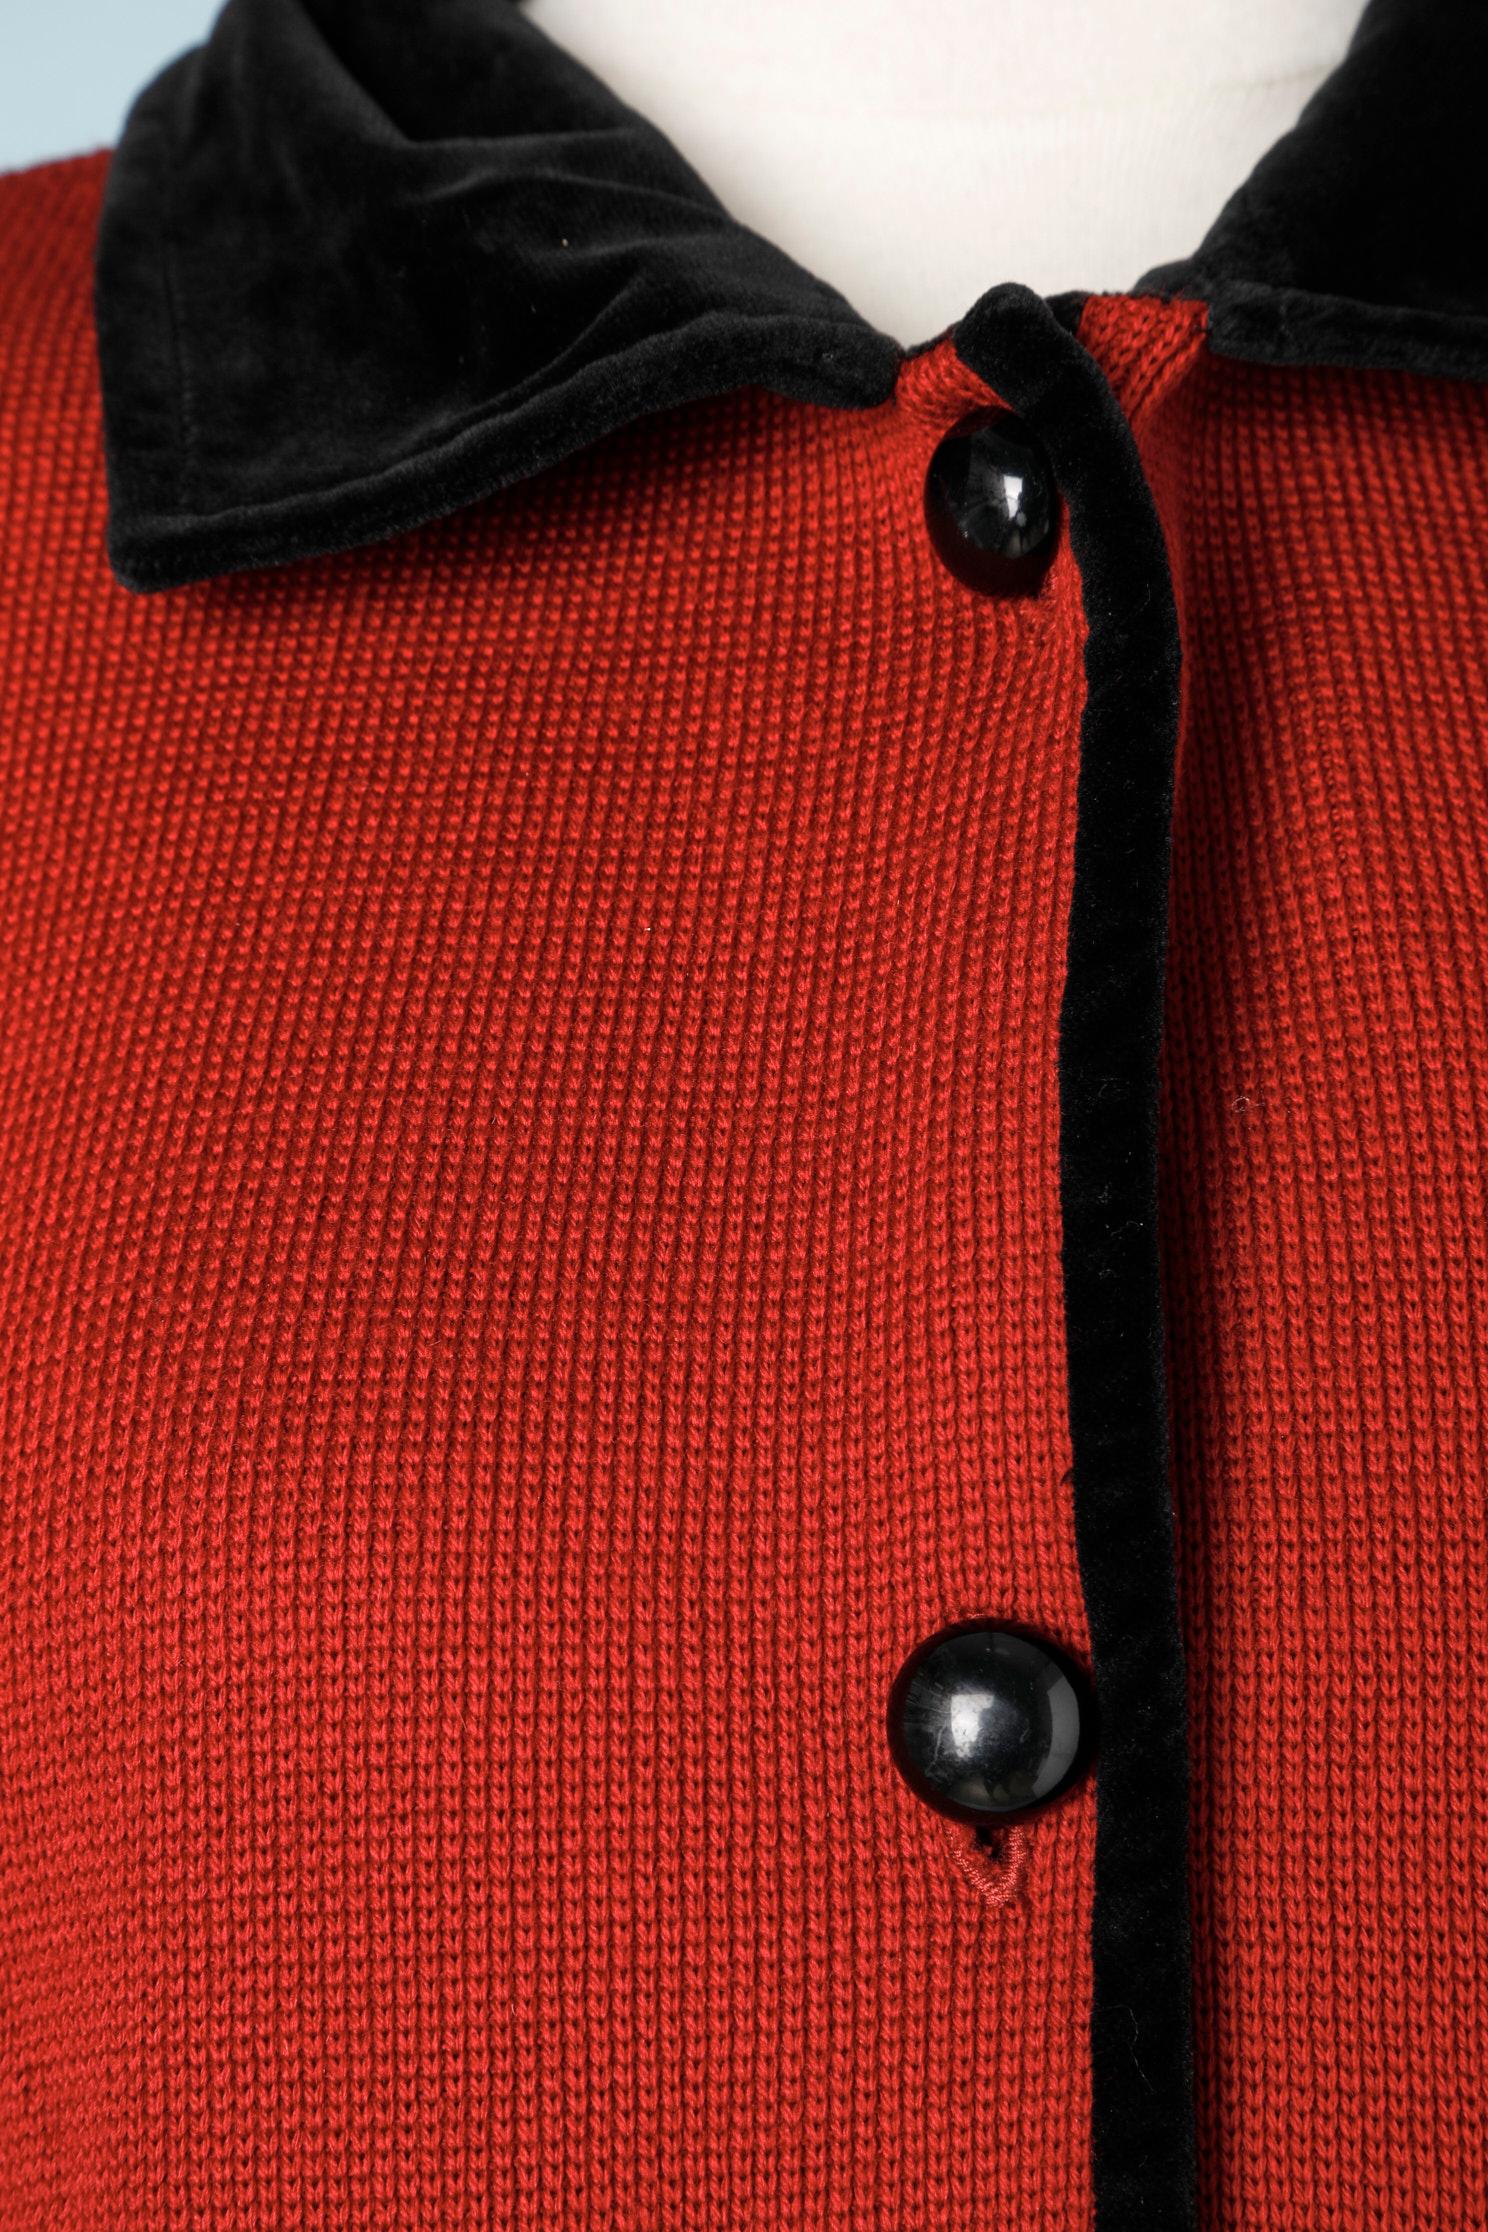 Cardigan long en tricot rouge avec détails en velours noir. Epaulettes. 
TAILLE 42 (Fr) L 